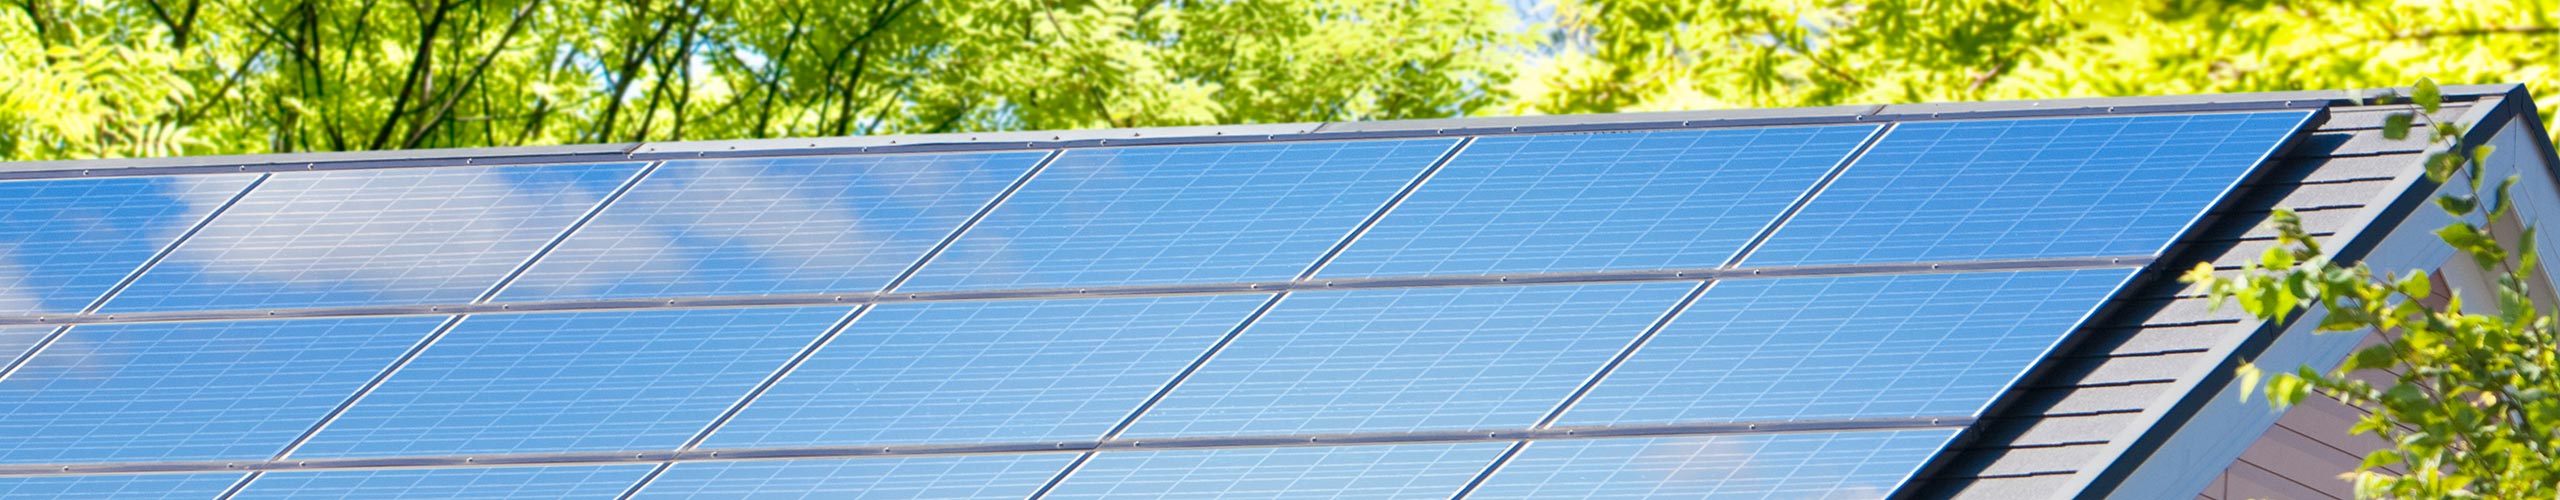 Solarstromspeicherung Thema im Energieberatertreff - Energieagentur Neckar-Odenwald-Kreis